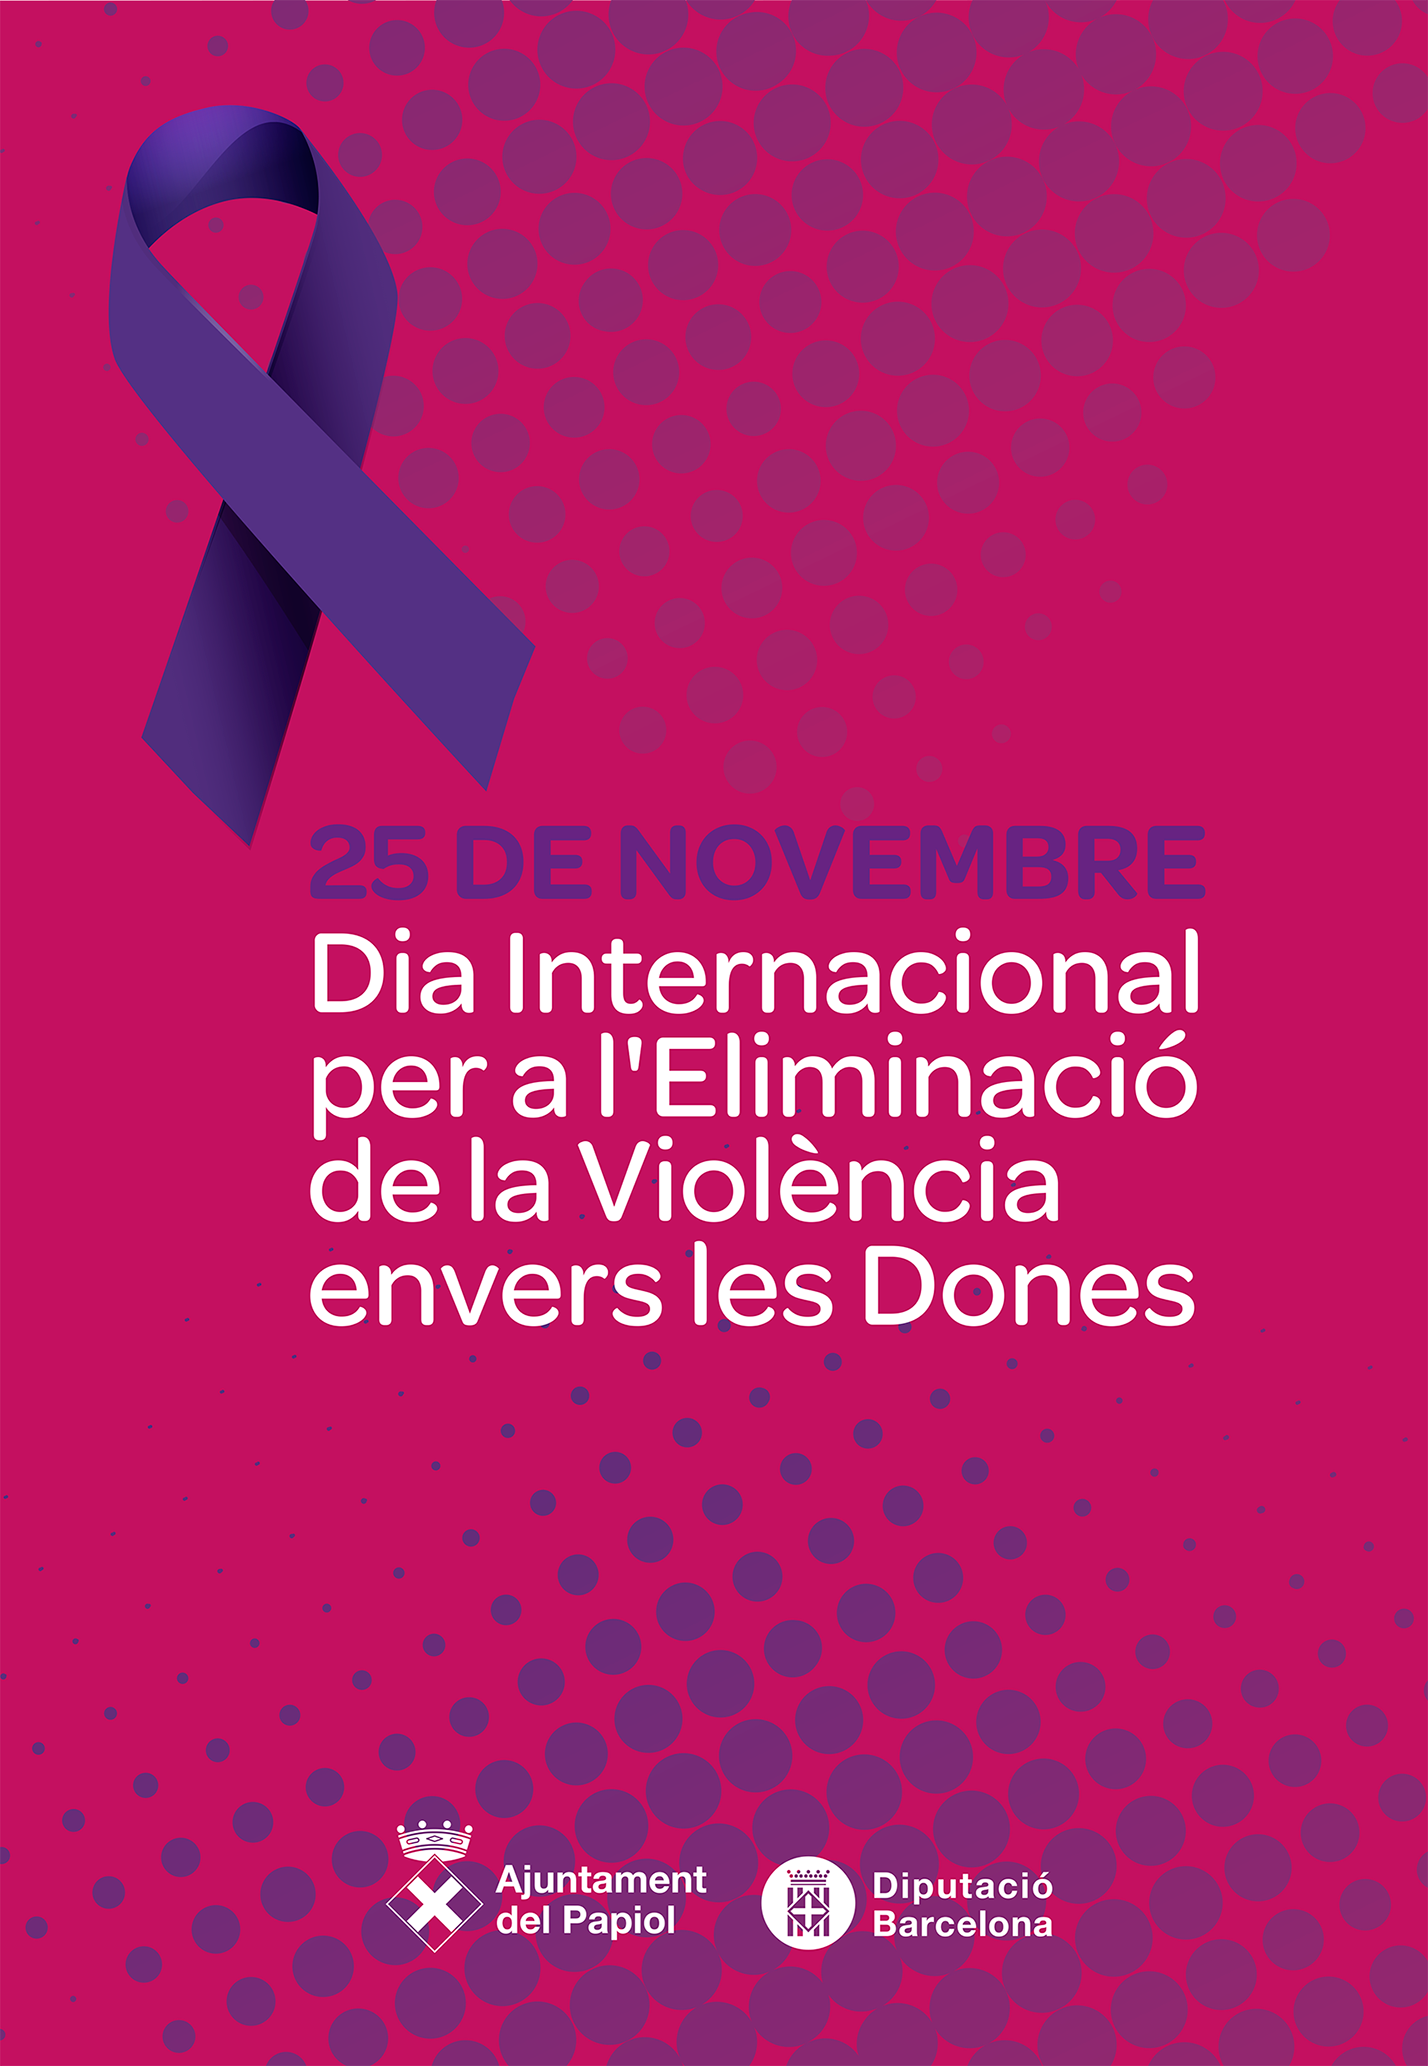 25 de novembre, Dia Internacional per a l'Eliminació de la Violència envers les Dones.